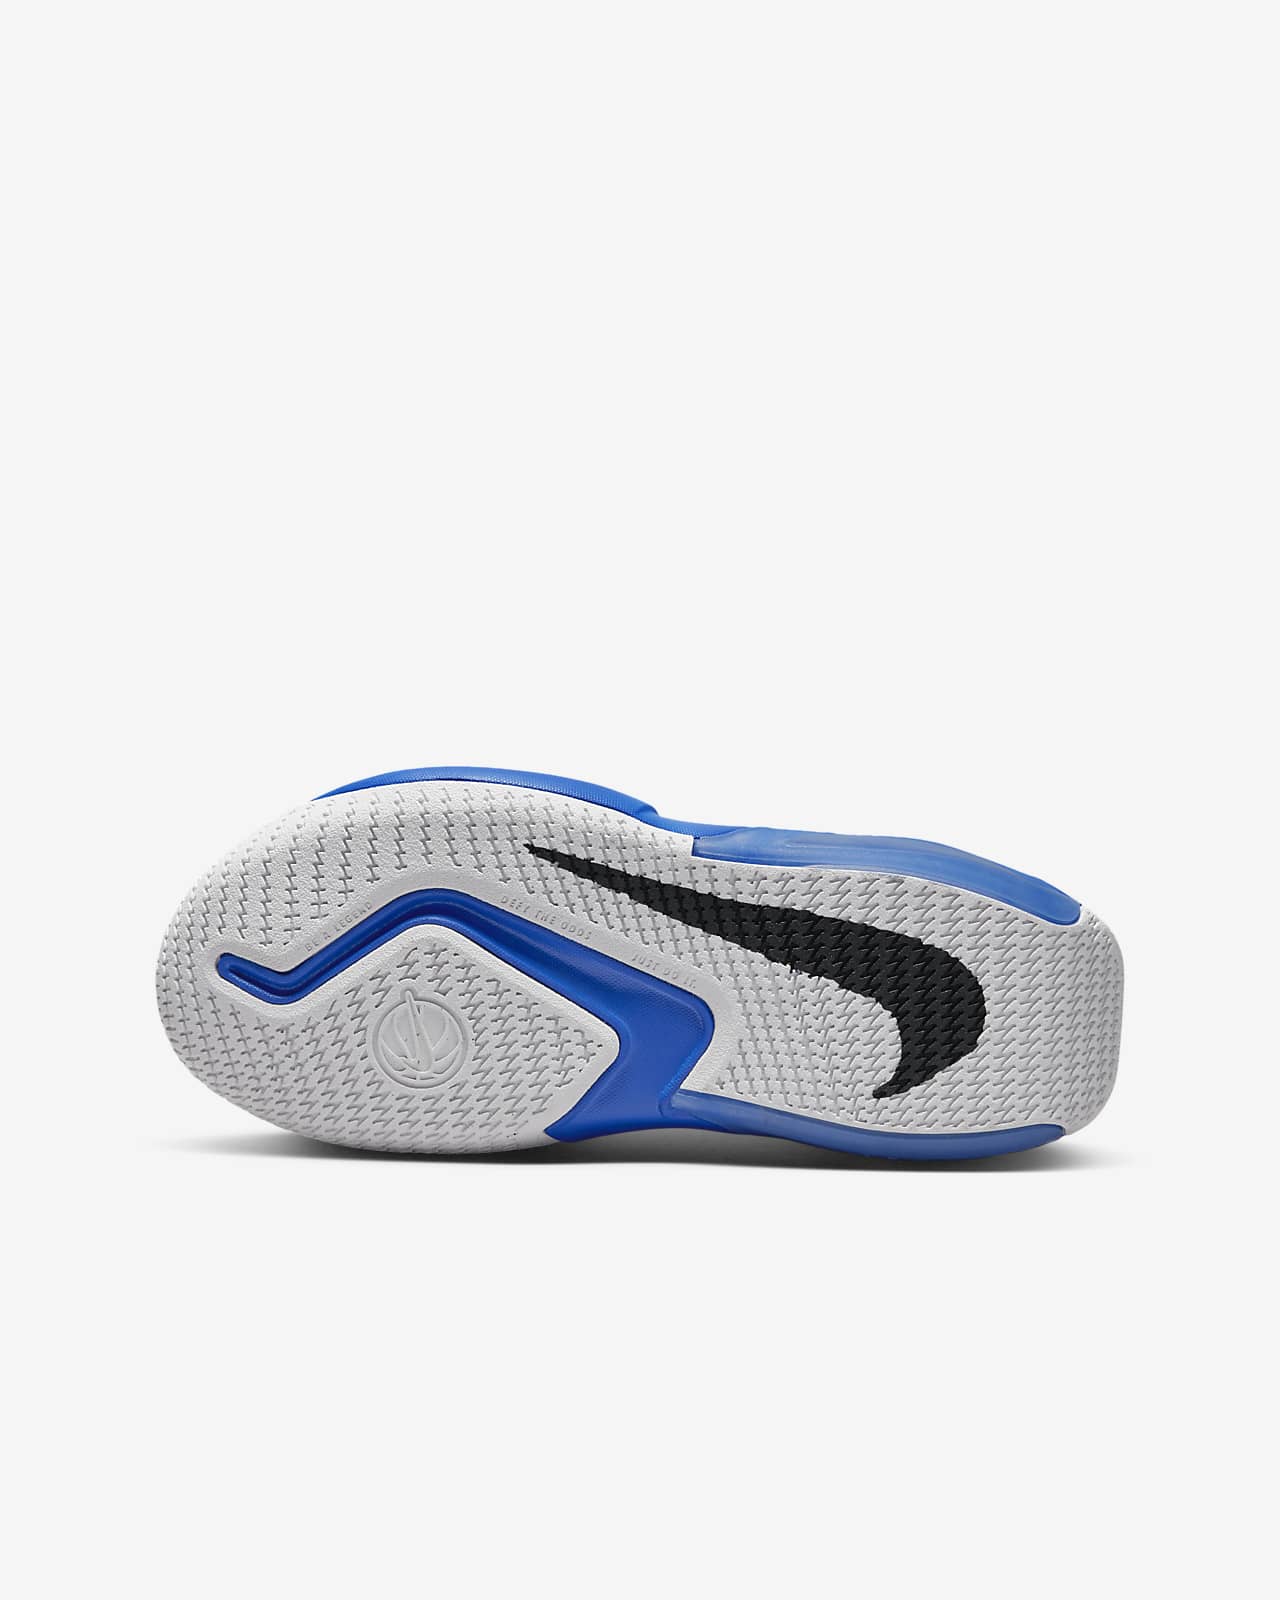 Nike Air Crossover Zapatillas de baloncesto - Niño/a. Nike